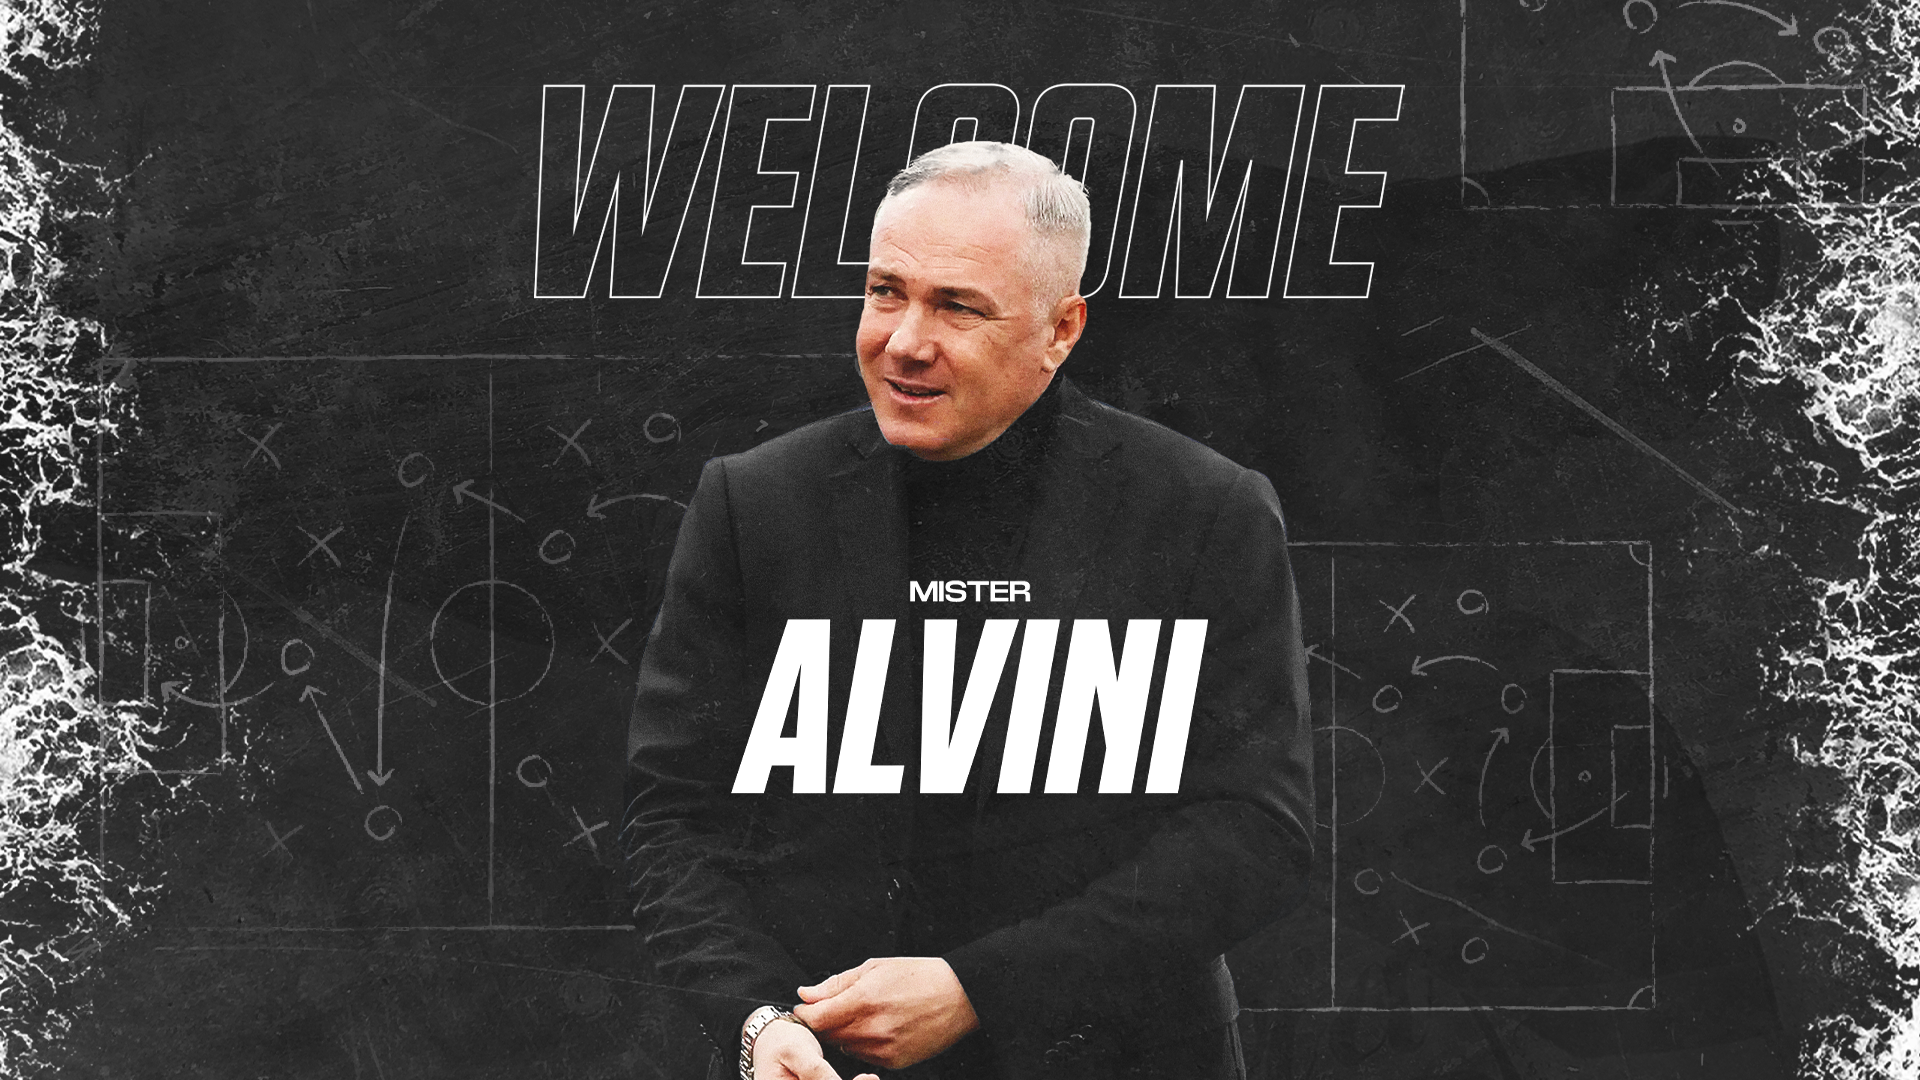 Official | Massimiliano Alvini is the new coach of Spezia Calcio